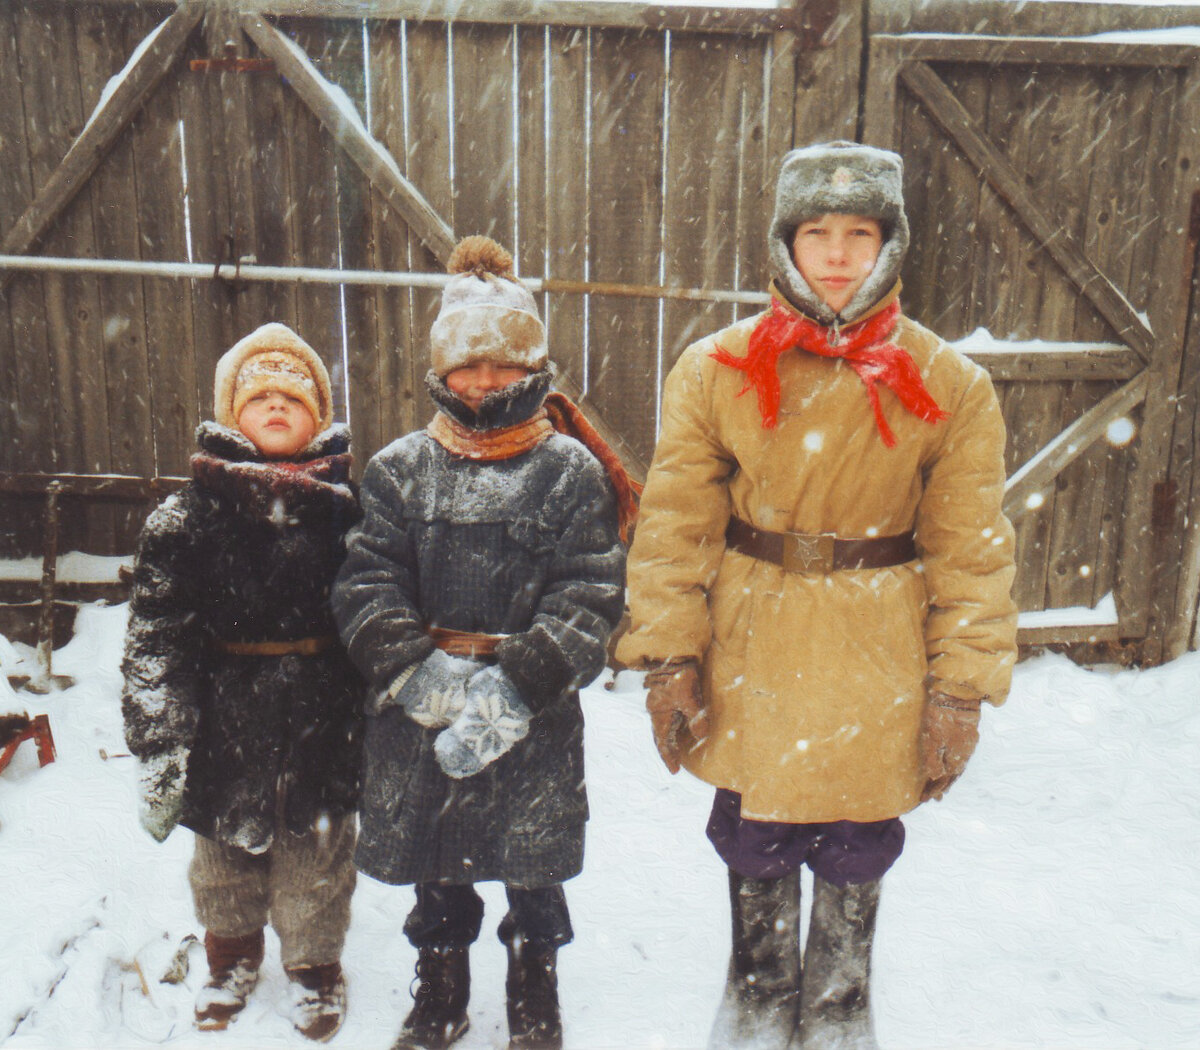 Одежда советских детей